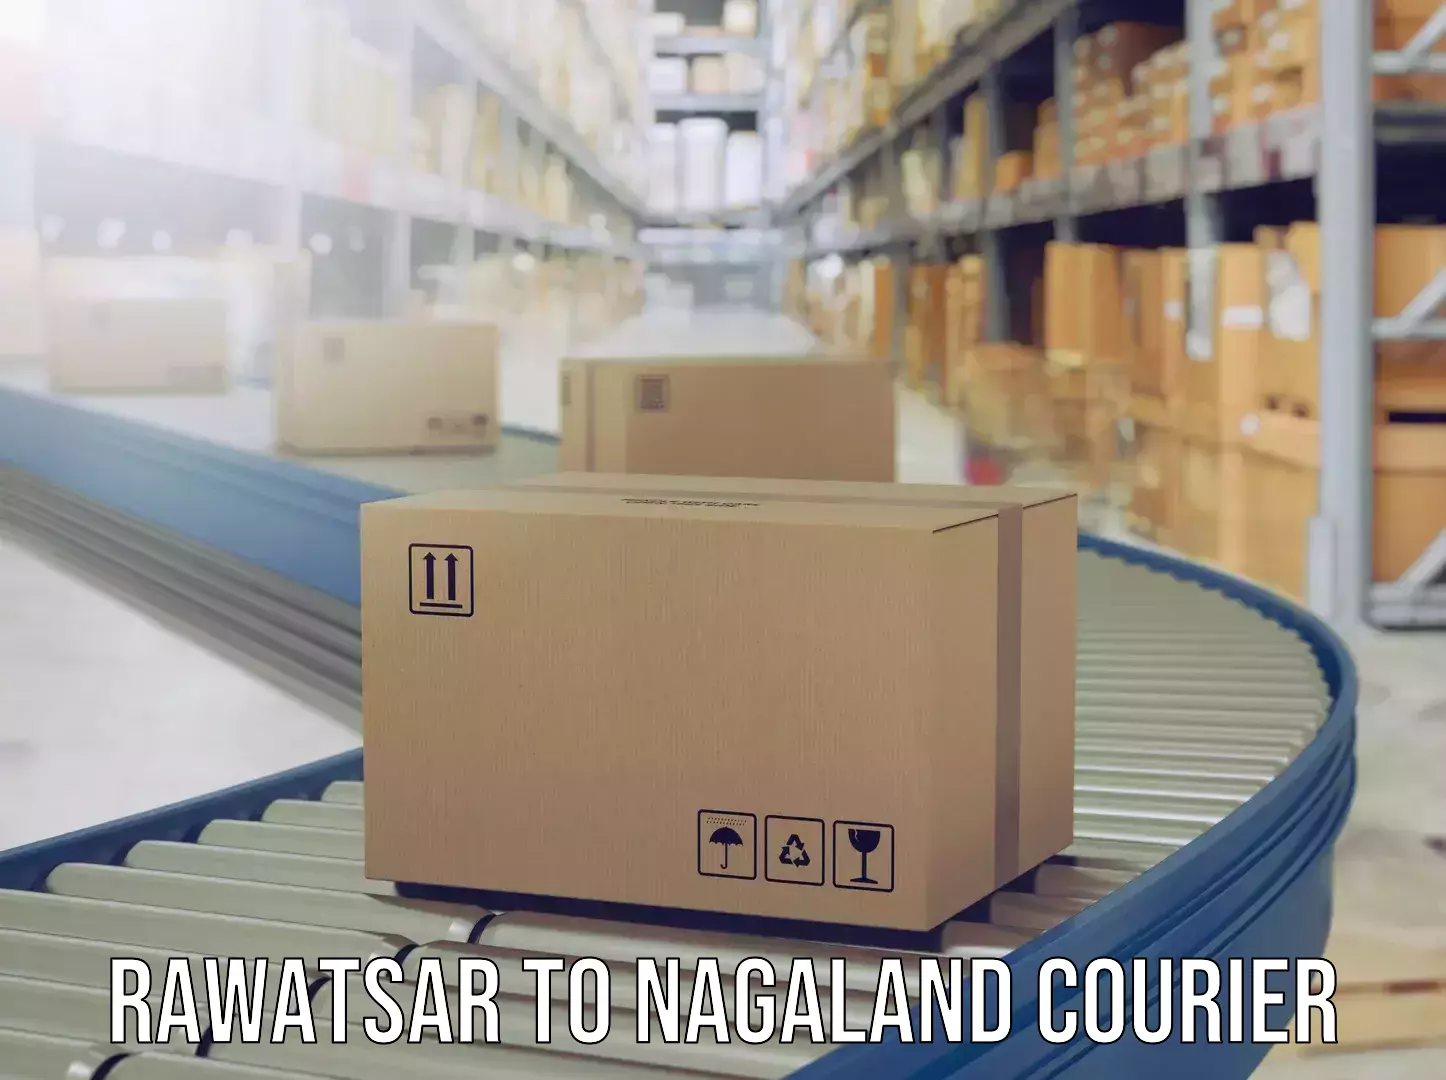 Luggage shipment processing in Rawatsar to Nagaland